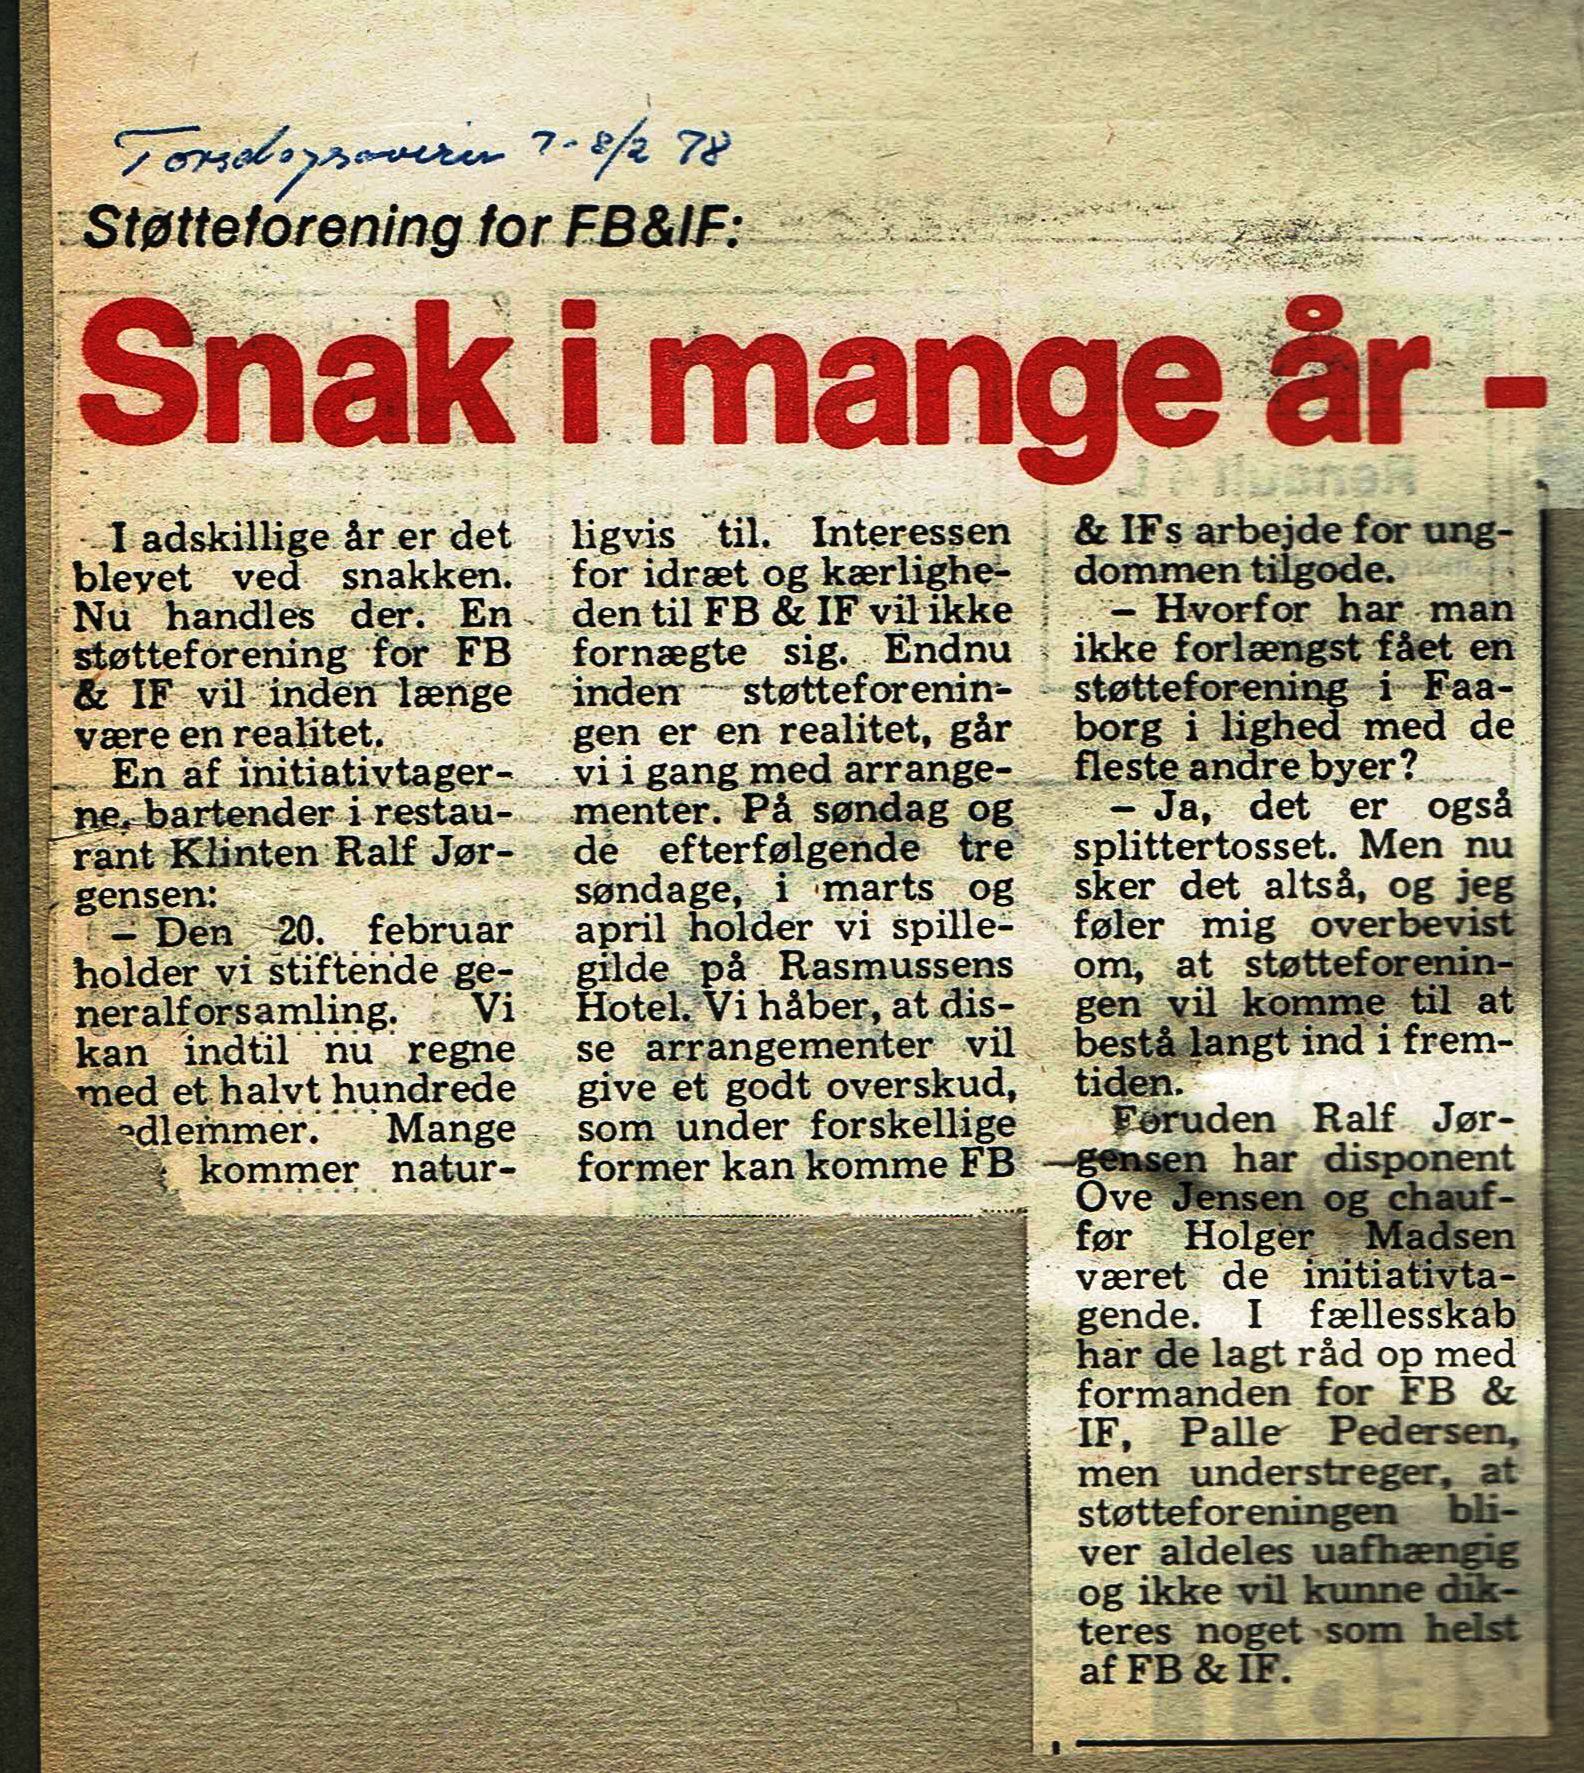 Artikel stiftelse venner februar 1978